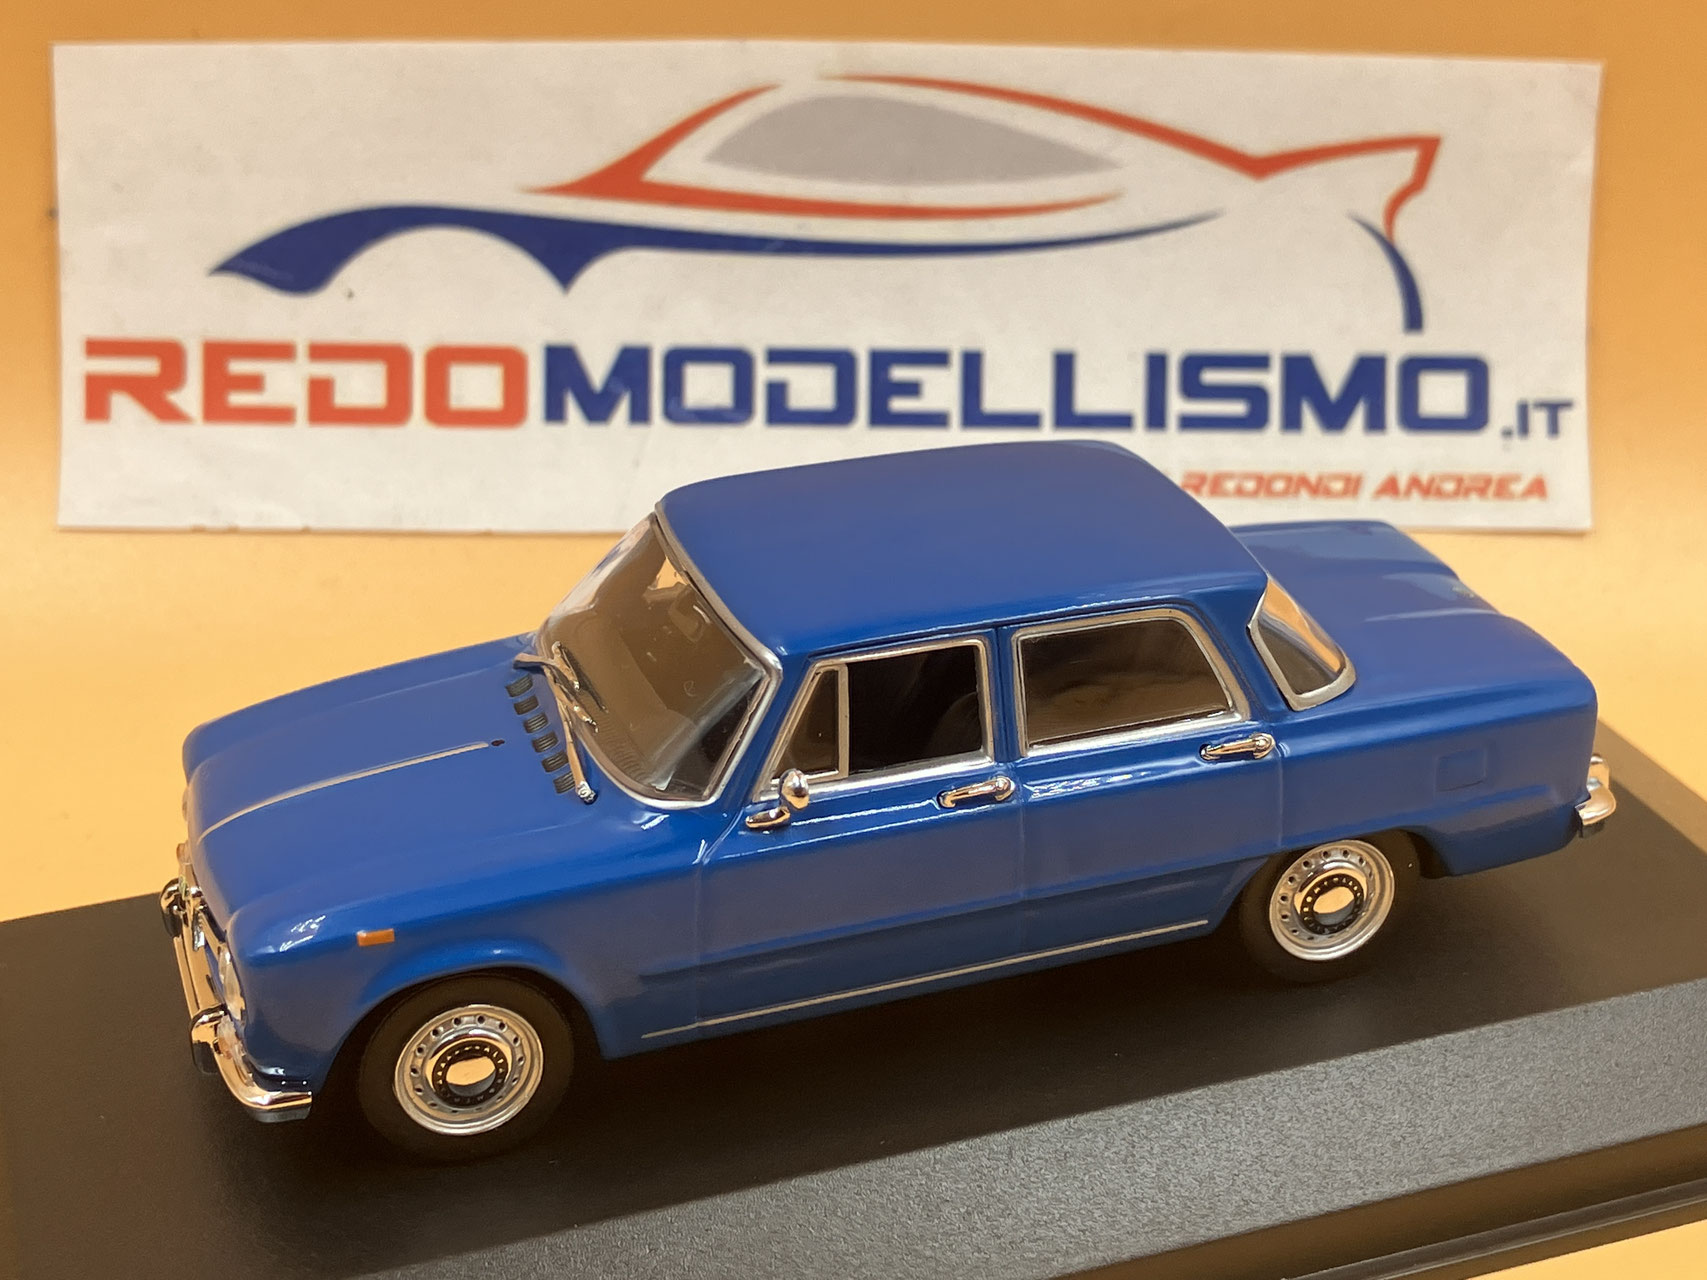 Shop Auto Anni '70 - Benvenuti su Redo Modellismo!